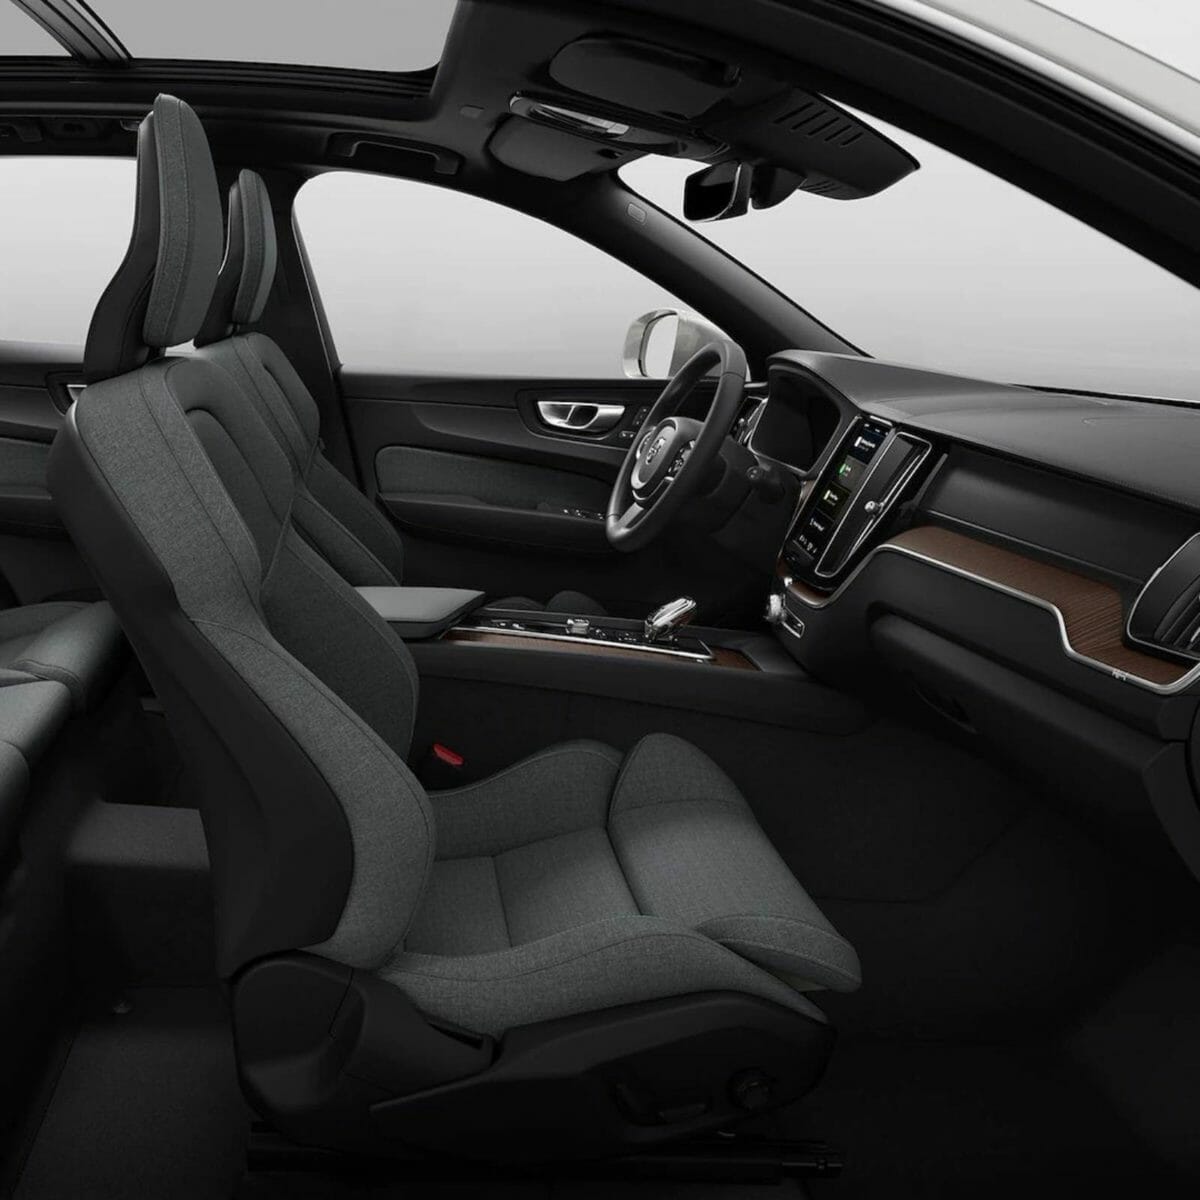 Volvo XC60 facelift interior